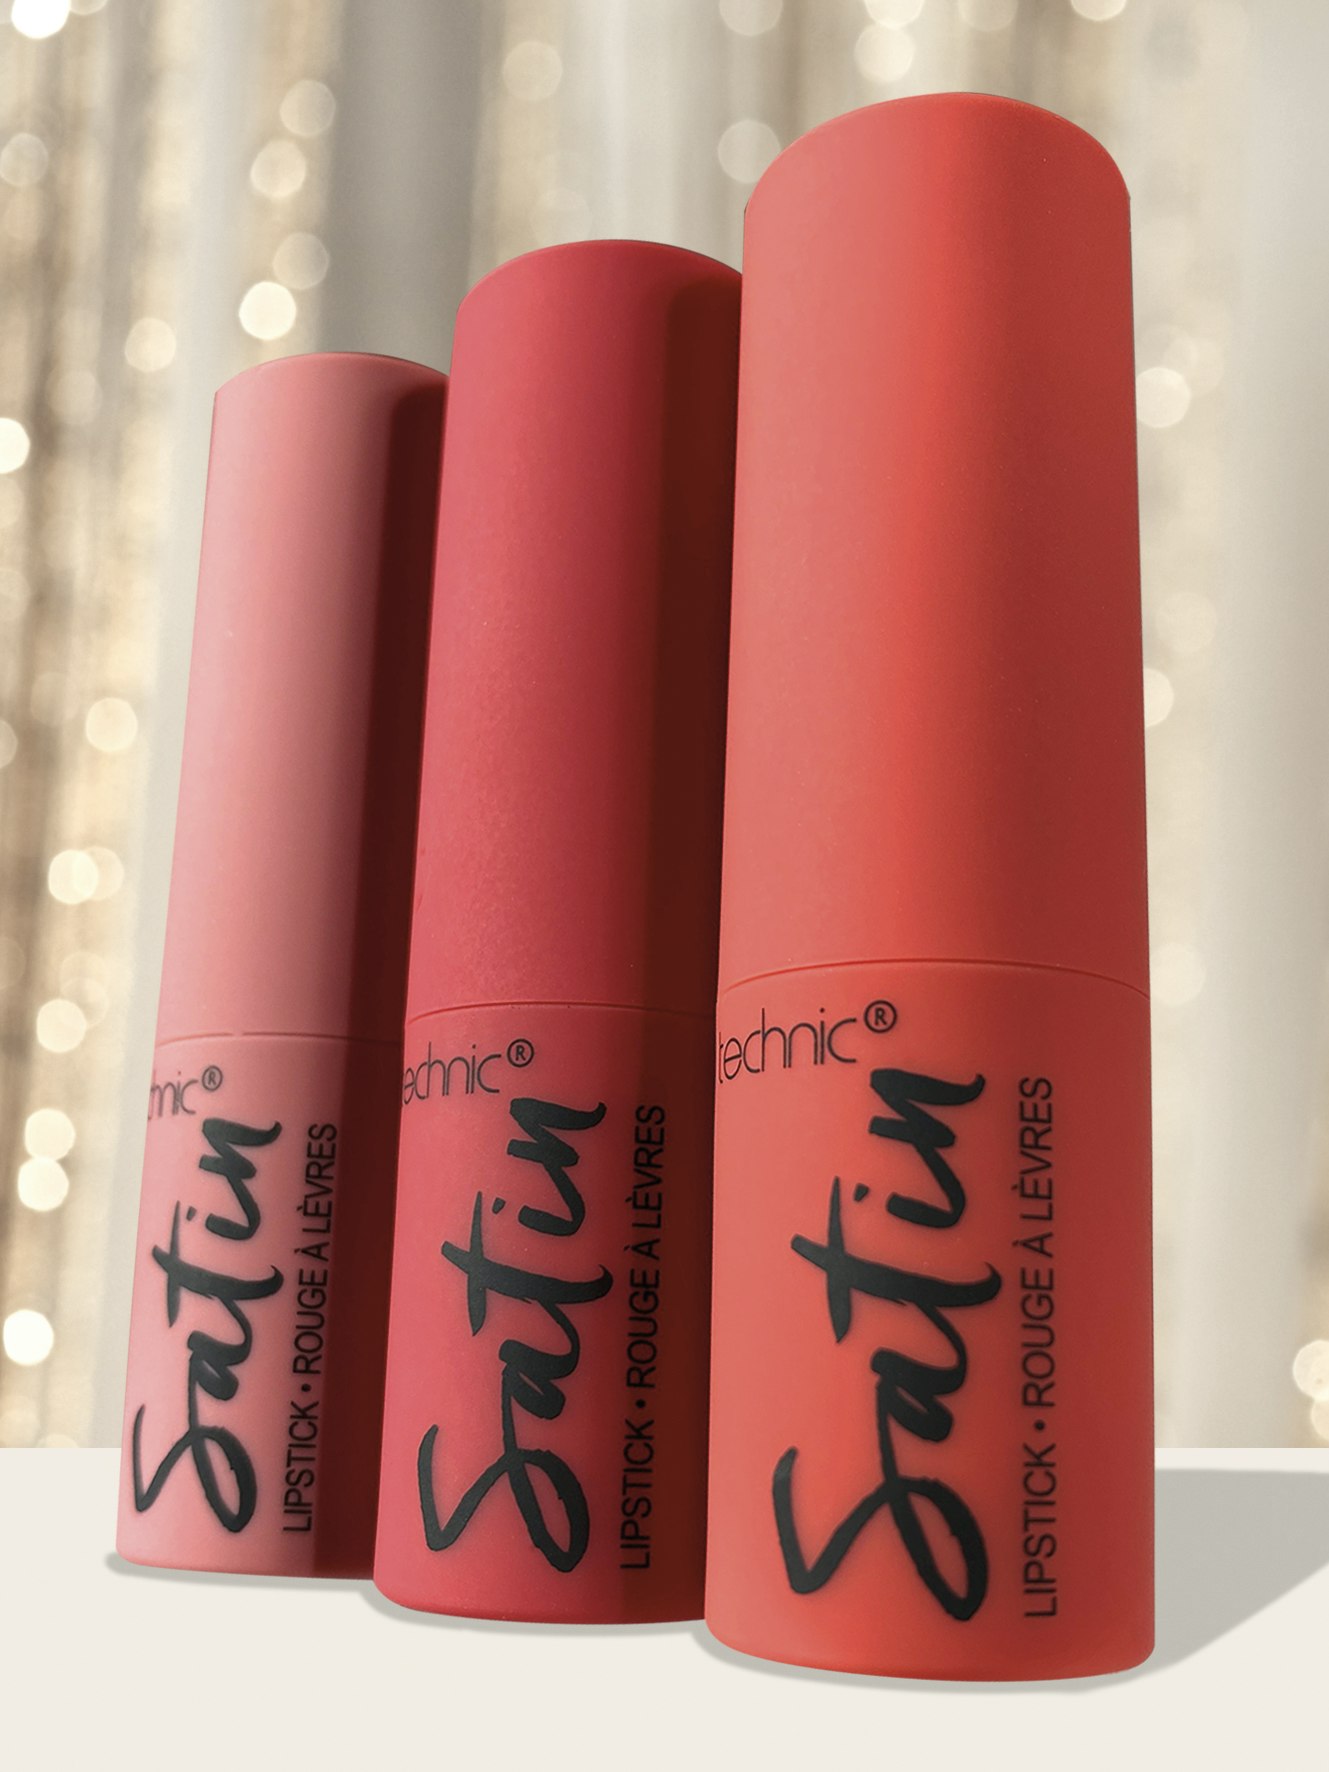 Technic - Satin Lipstick Set